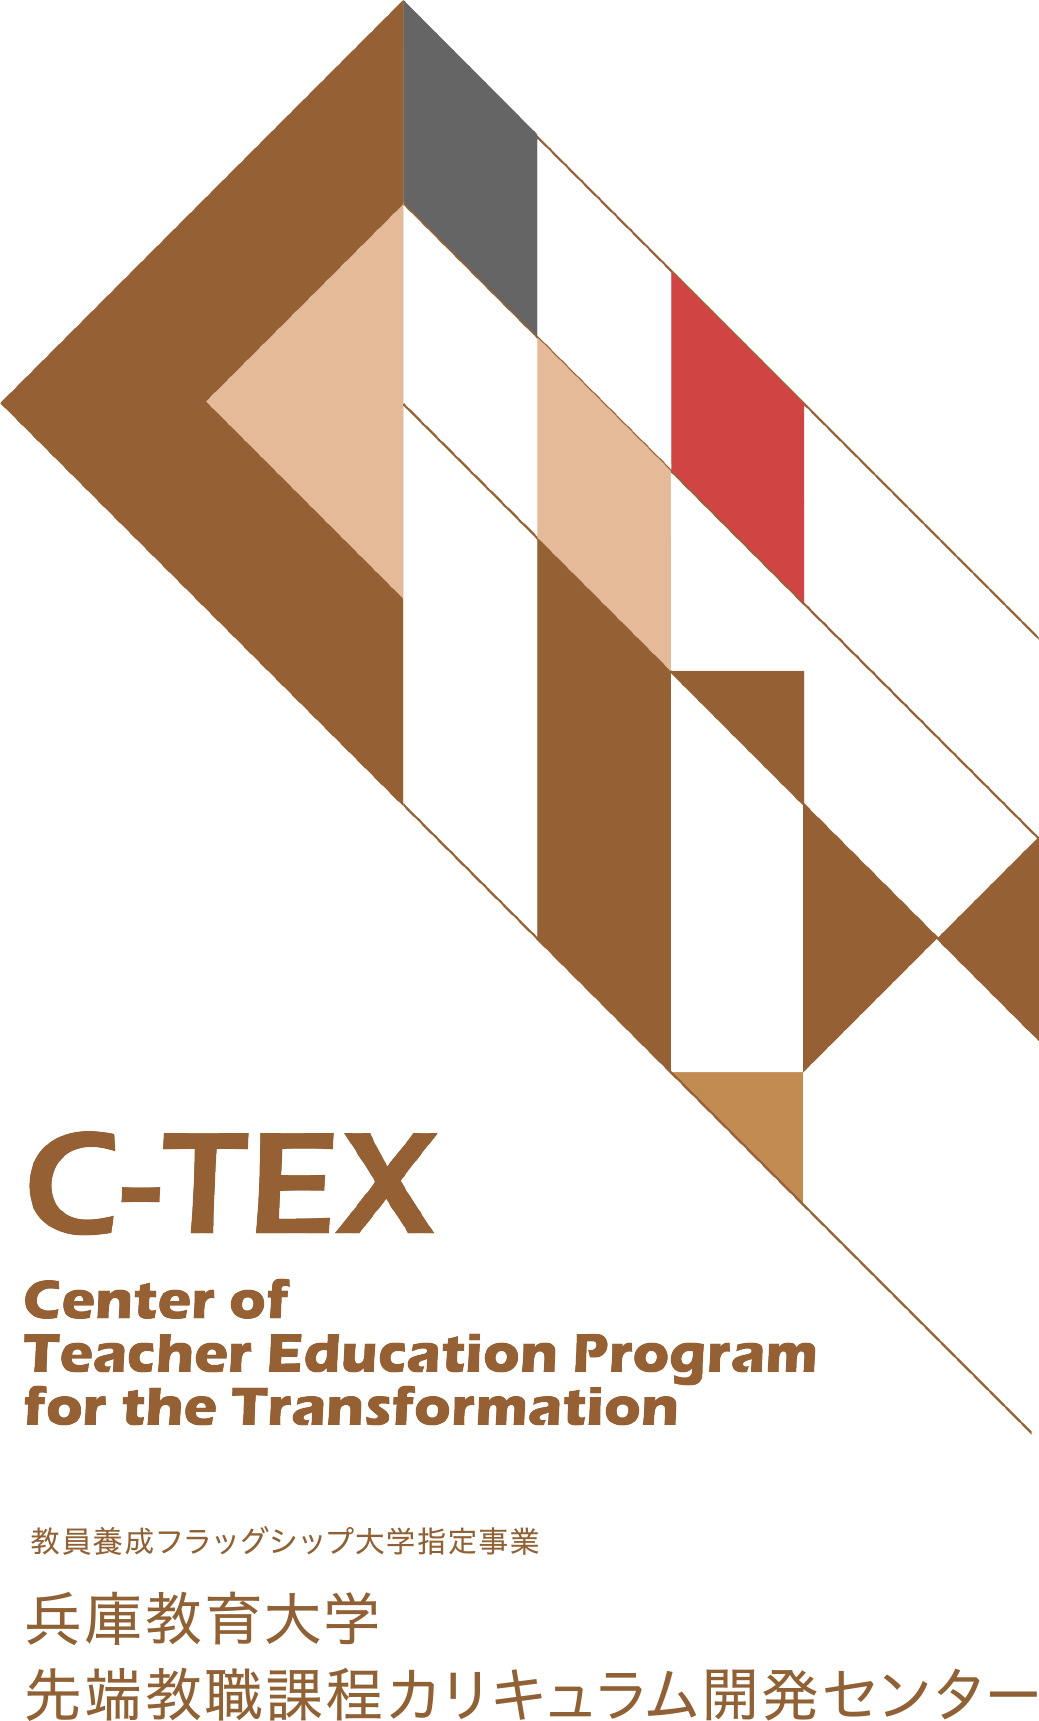 教員養成フラッグシップ大学指定事業　C-TEX 兵庫教育大学先端教職課程カリキュラム開発センター